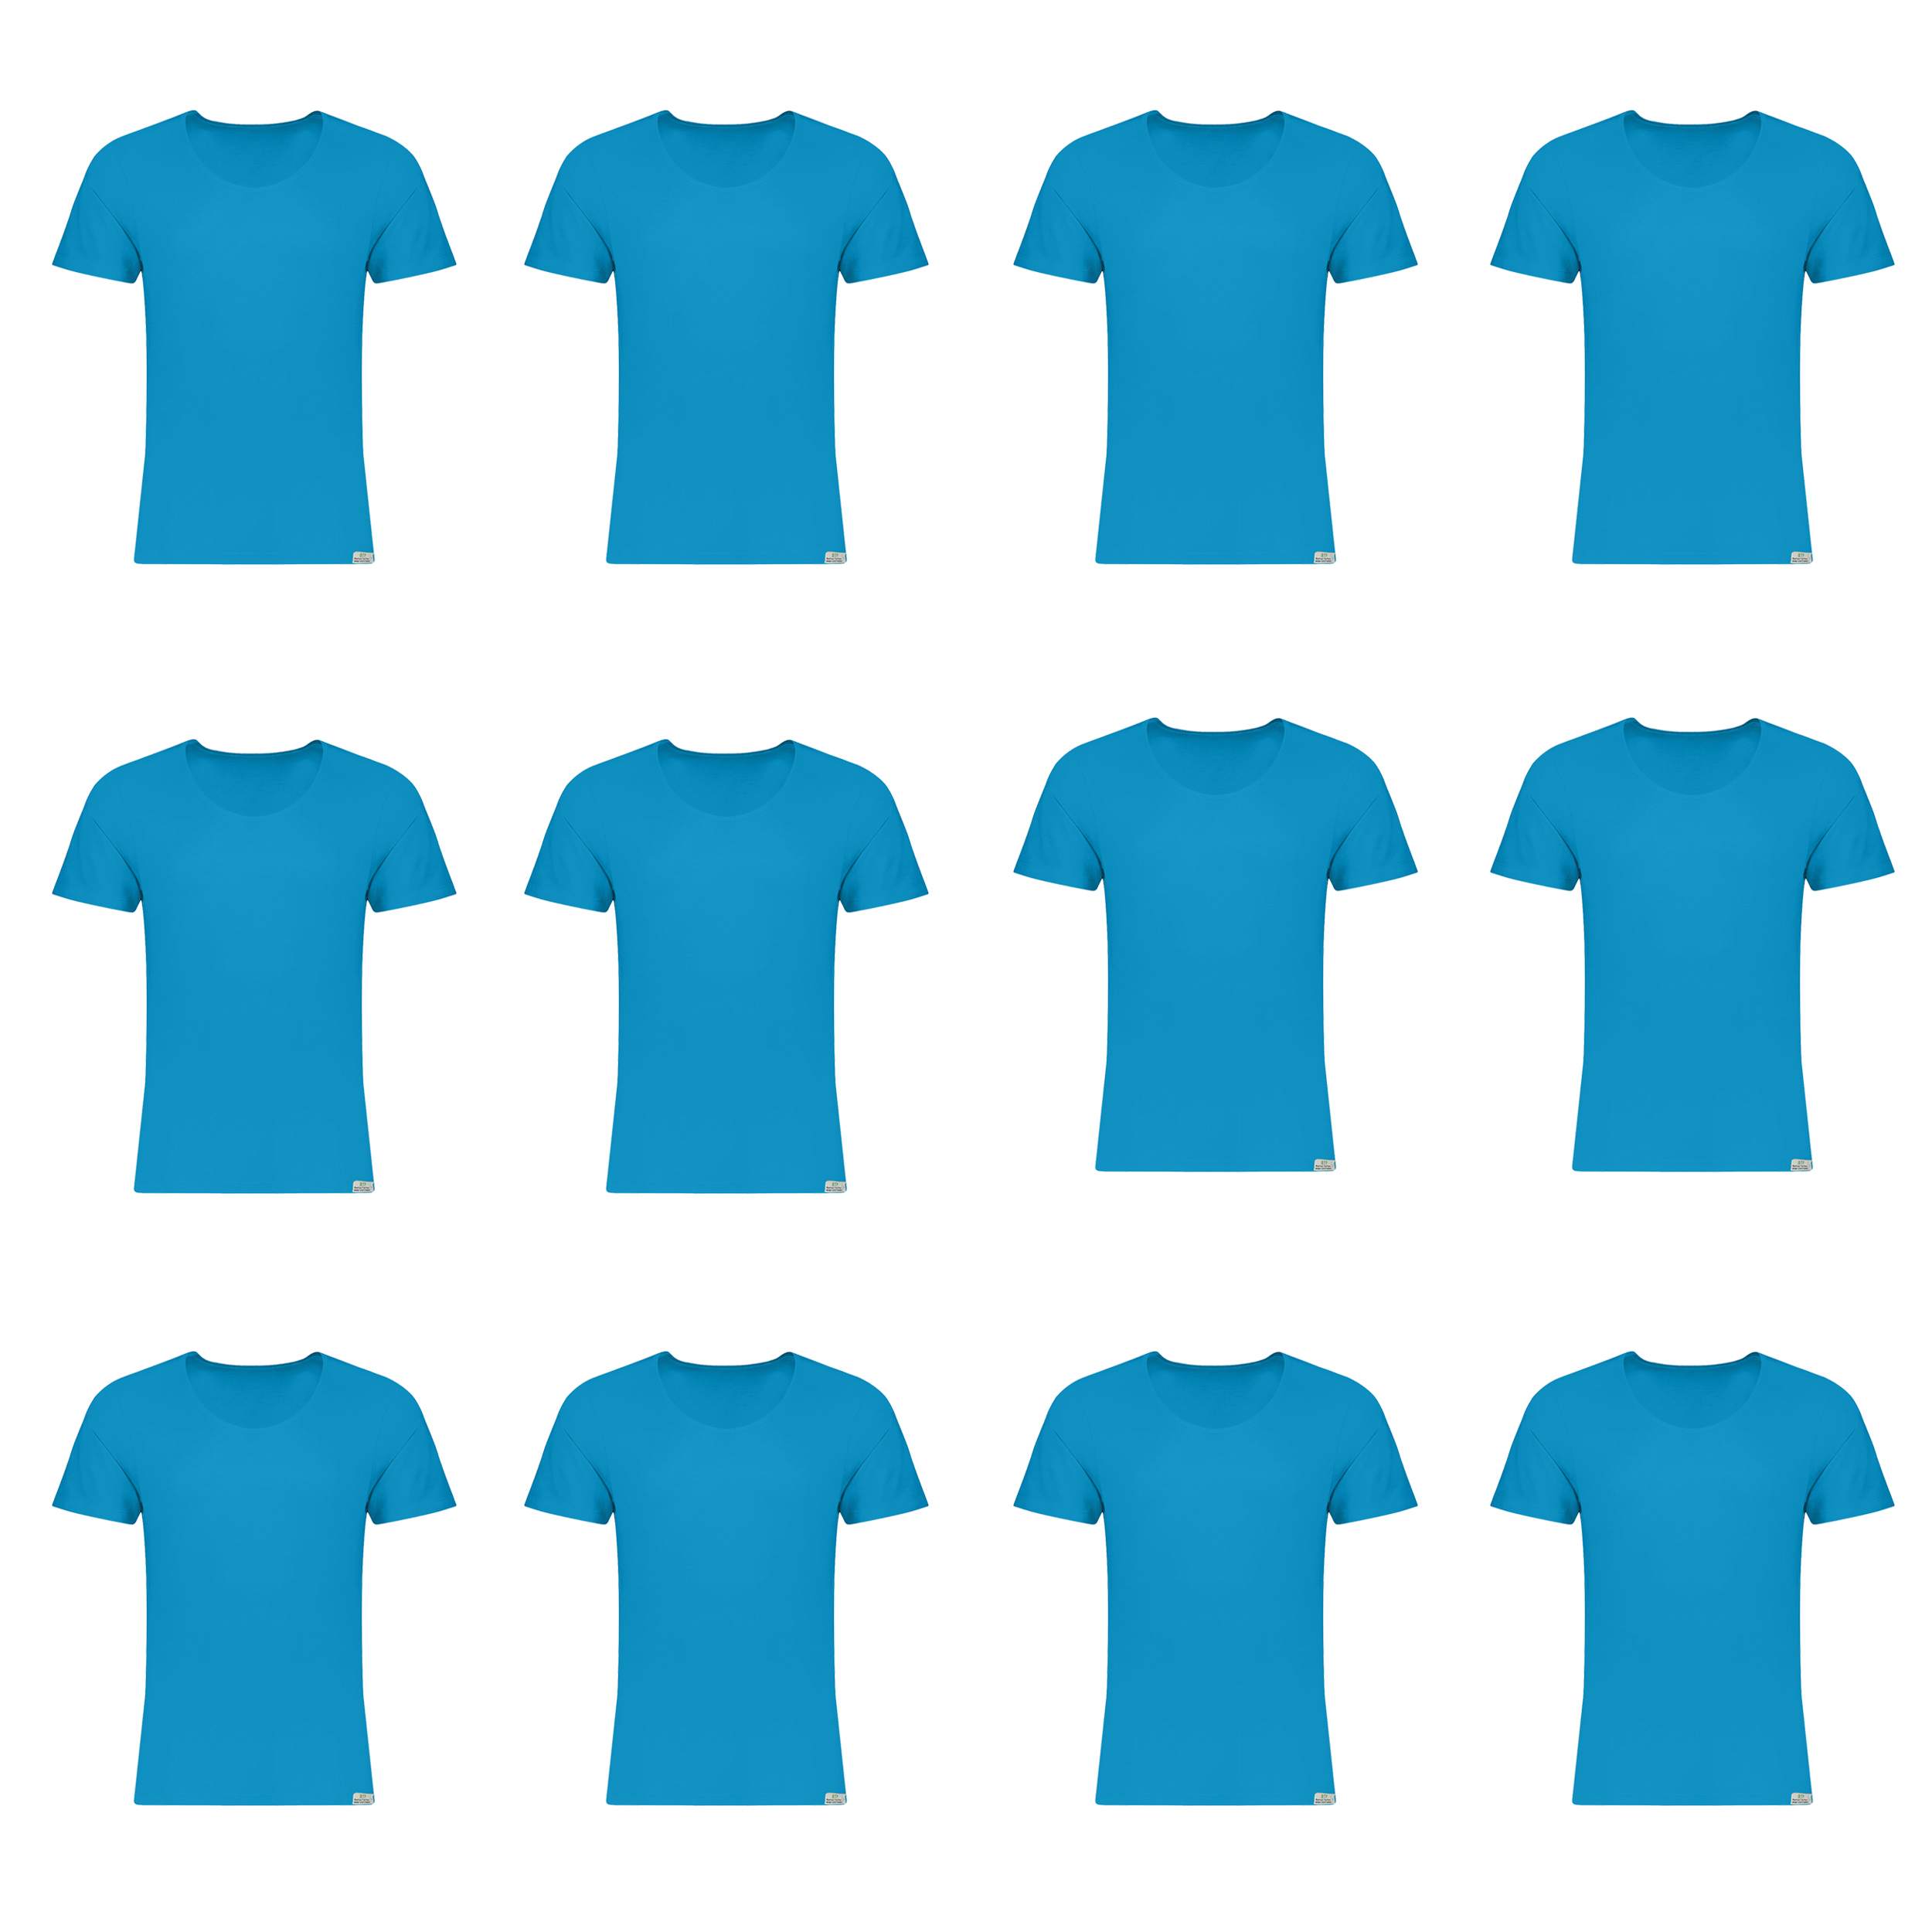 زیرپوش آستین دار مردانه برهان تن پوش مدل 3-02 رنگ آبی فیروزه ای بسته 12 عددی